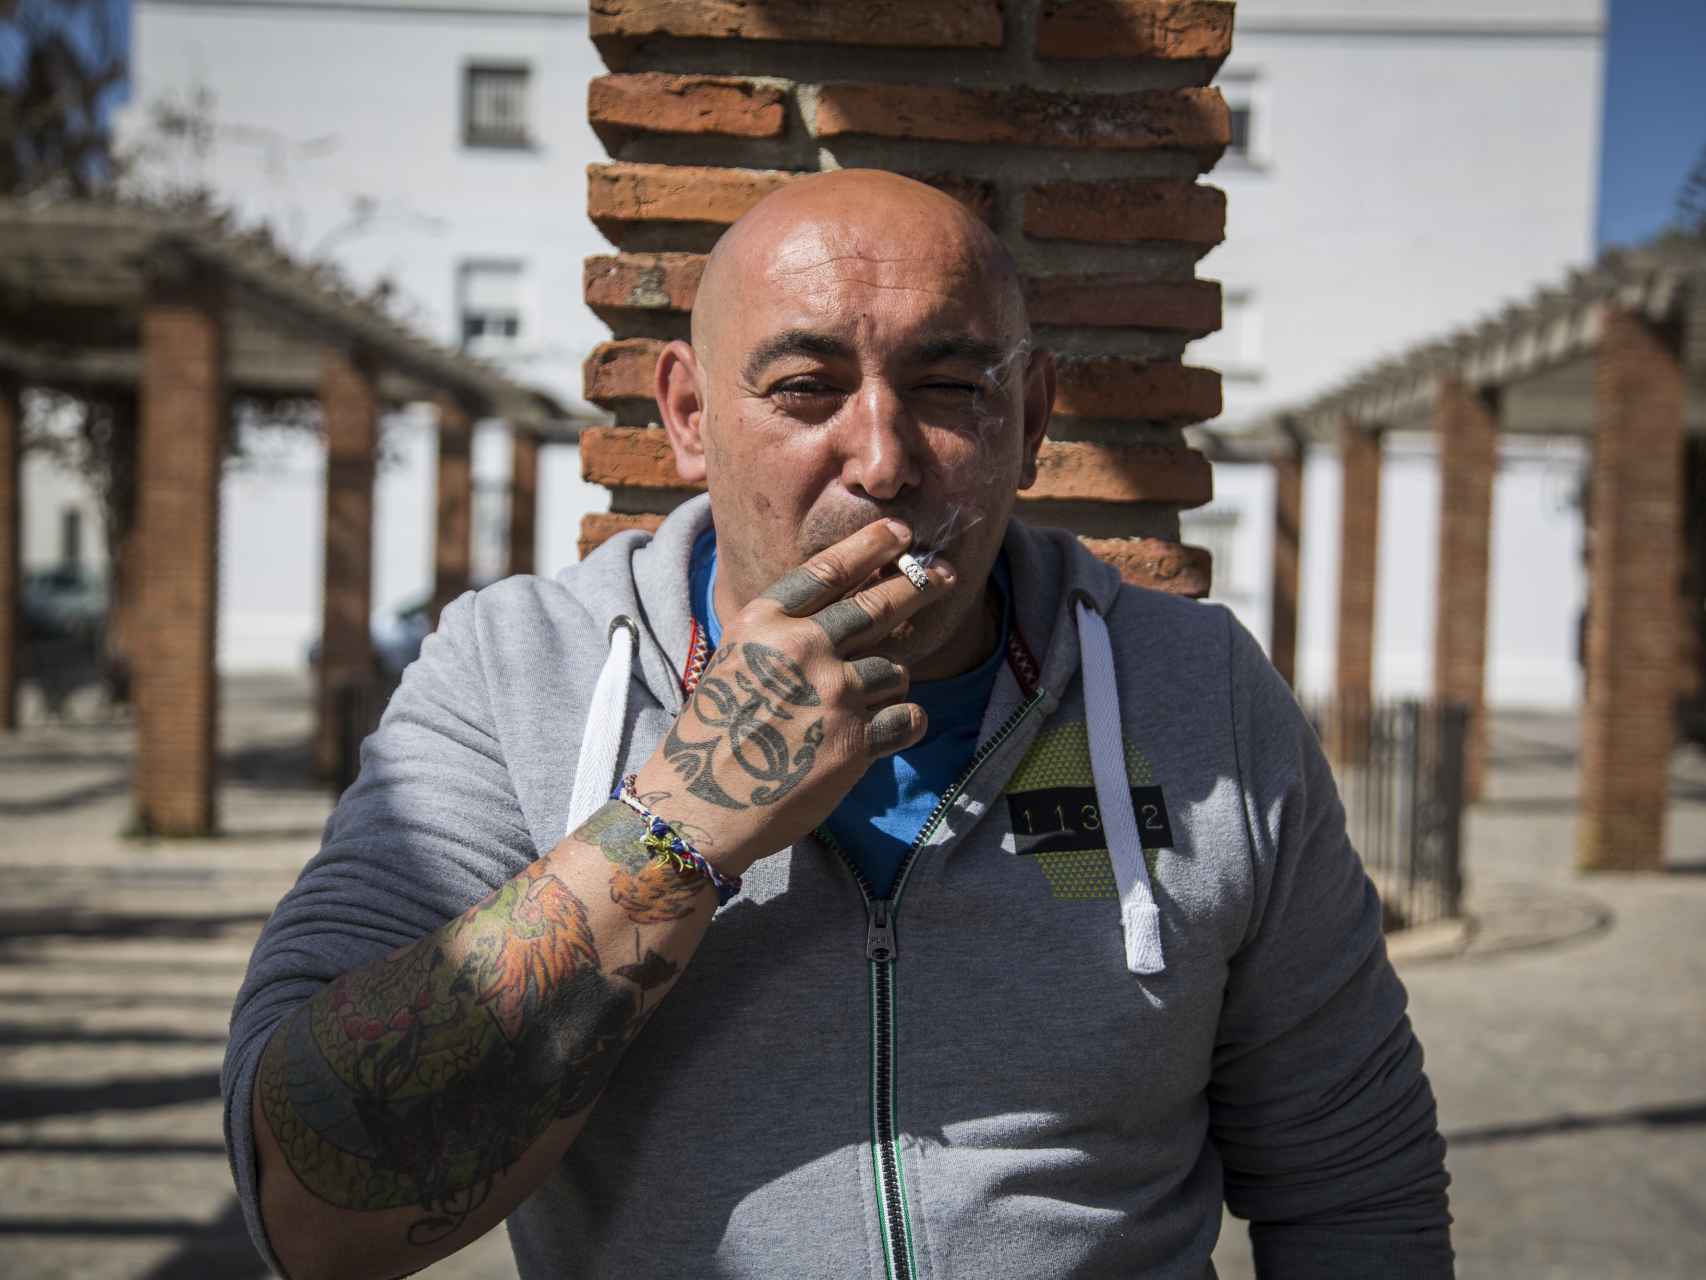 Juan Sánchez asegura que el narcotráfico es un caramelo goloso para los menores sin trabajo de Vejer. Él ha pasado cuatro años y medio en prisión por descargar hachís de una lancha.